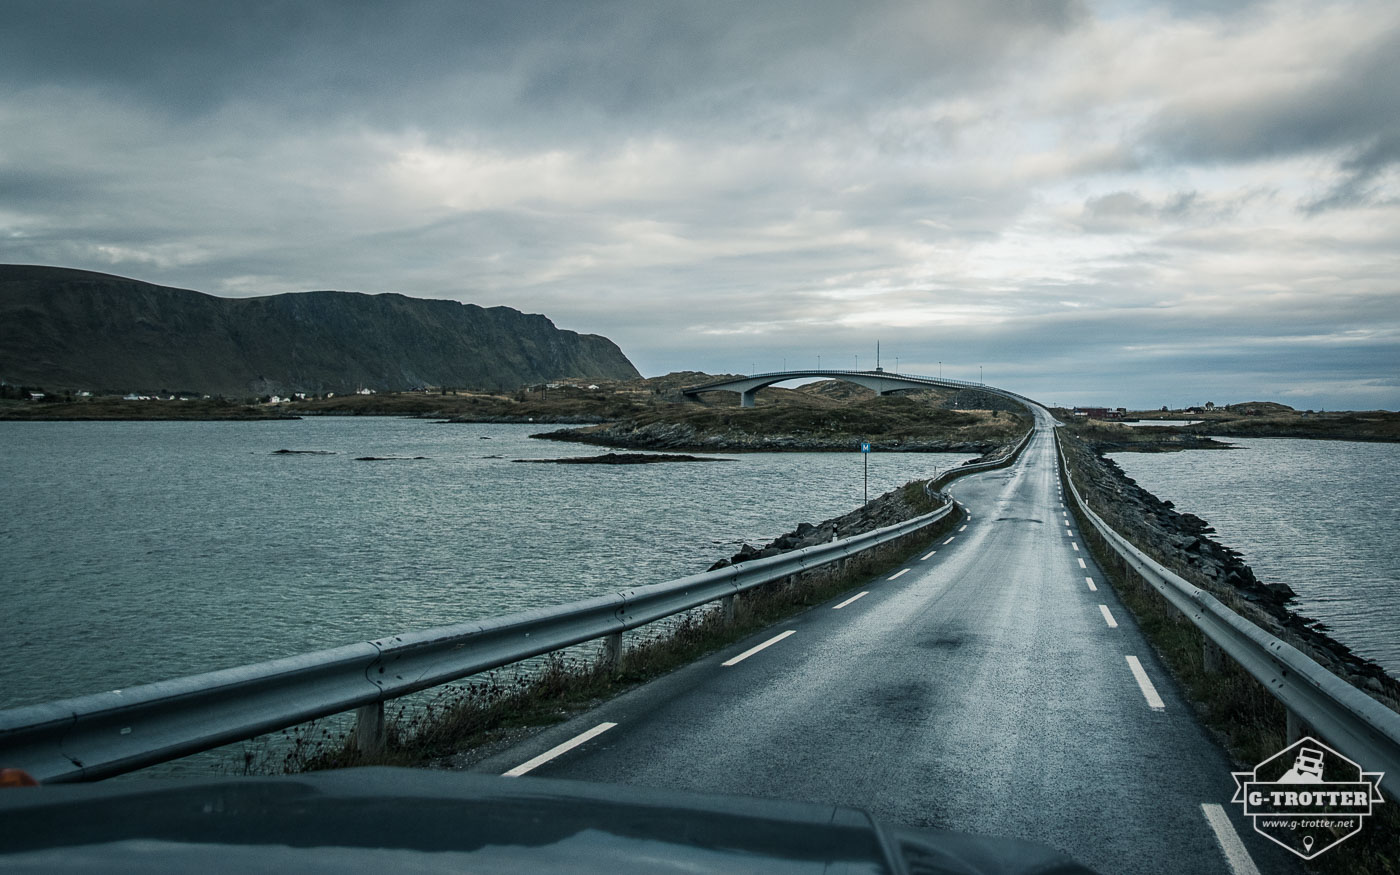 Bild 13 der Bildergalerie “Straßen von Norwegen”